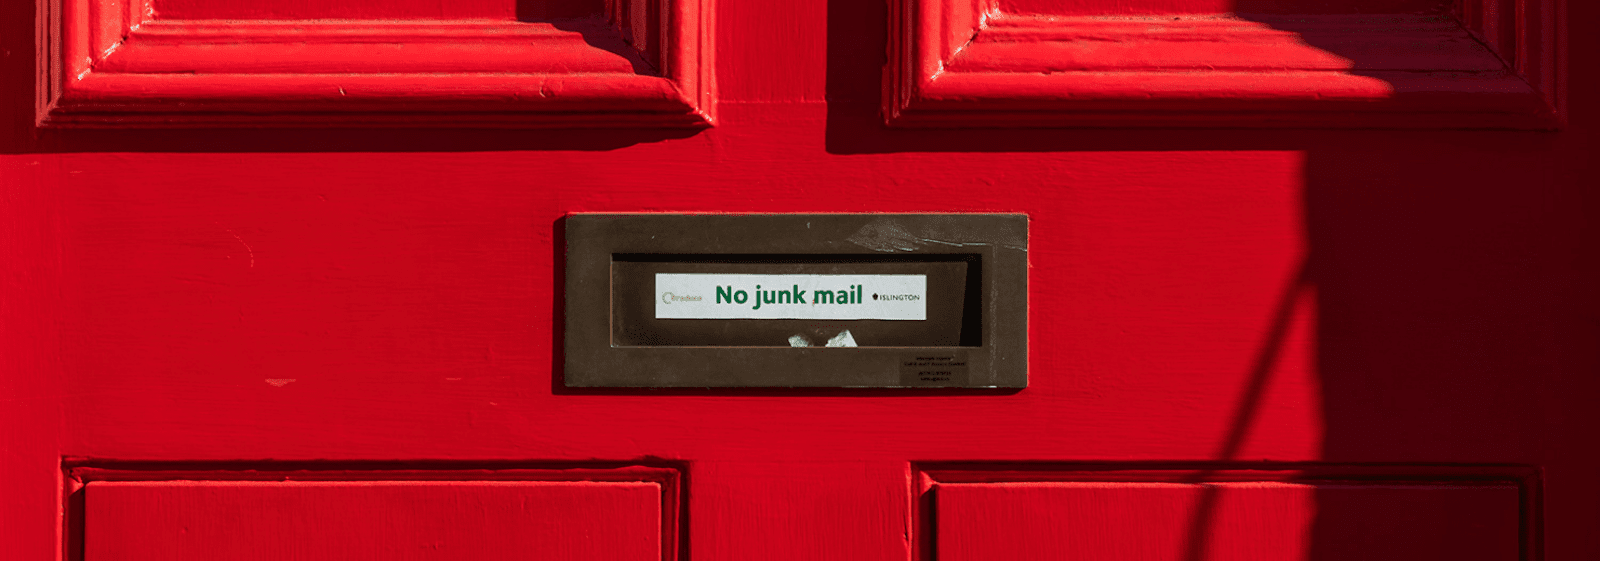 no junk mail door